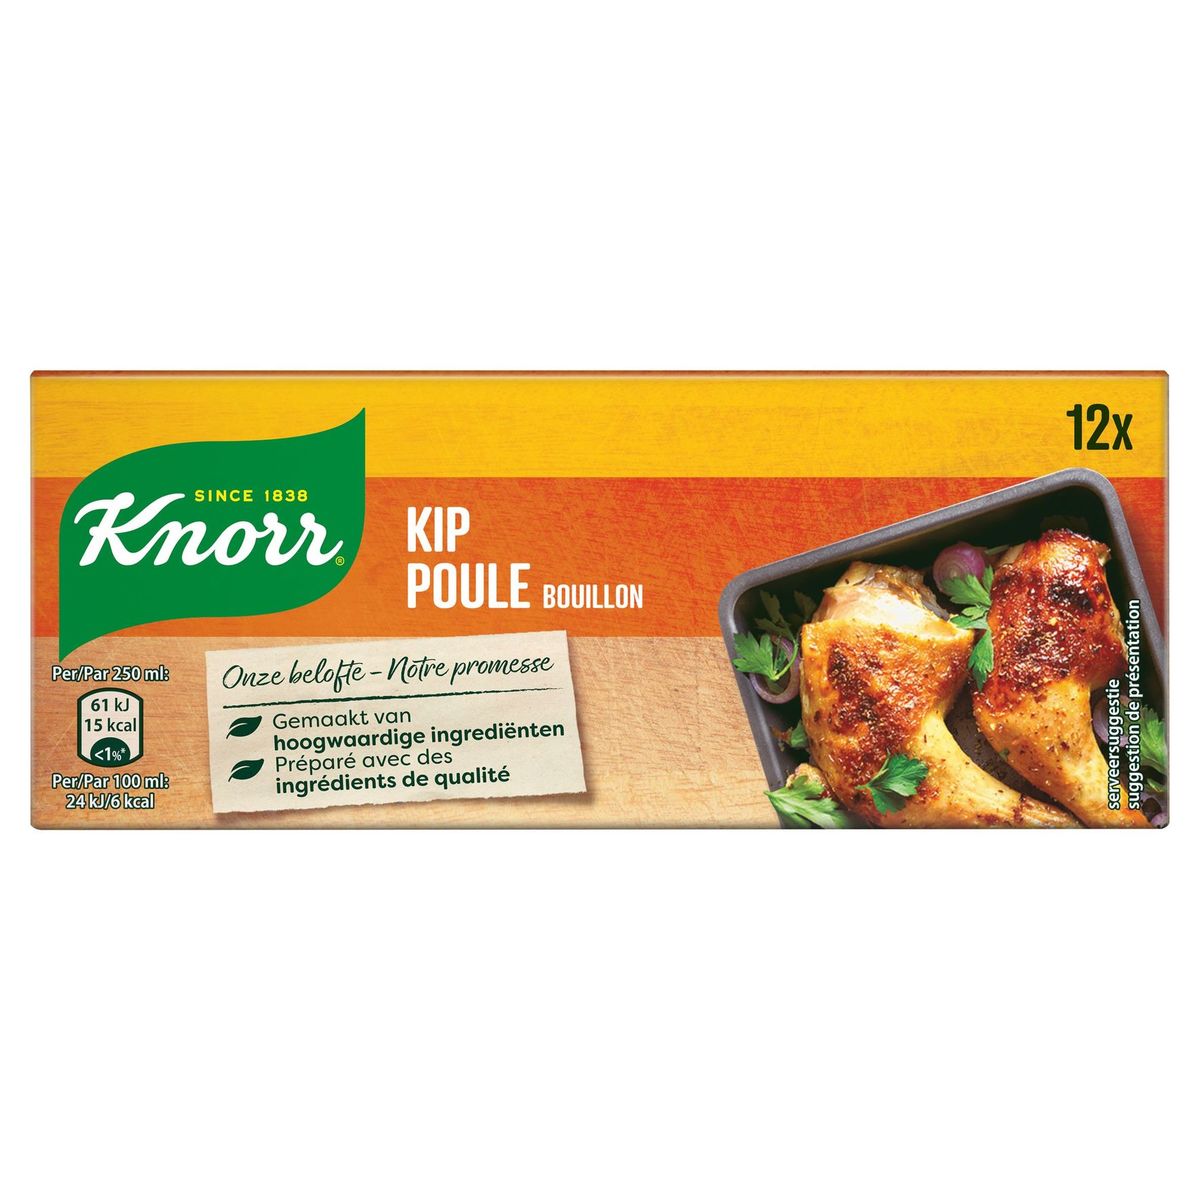 Knorr Original Bouillon Kip 12 Bouillonblokjes 12 x 10 g